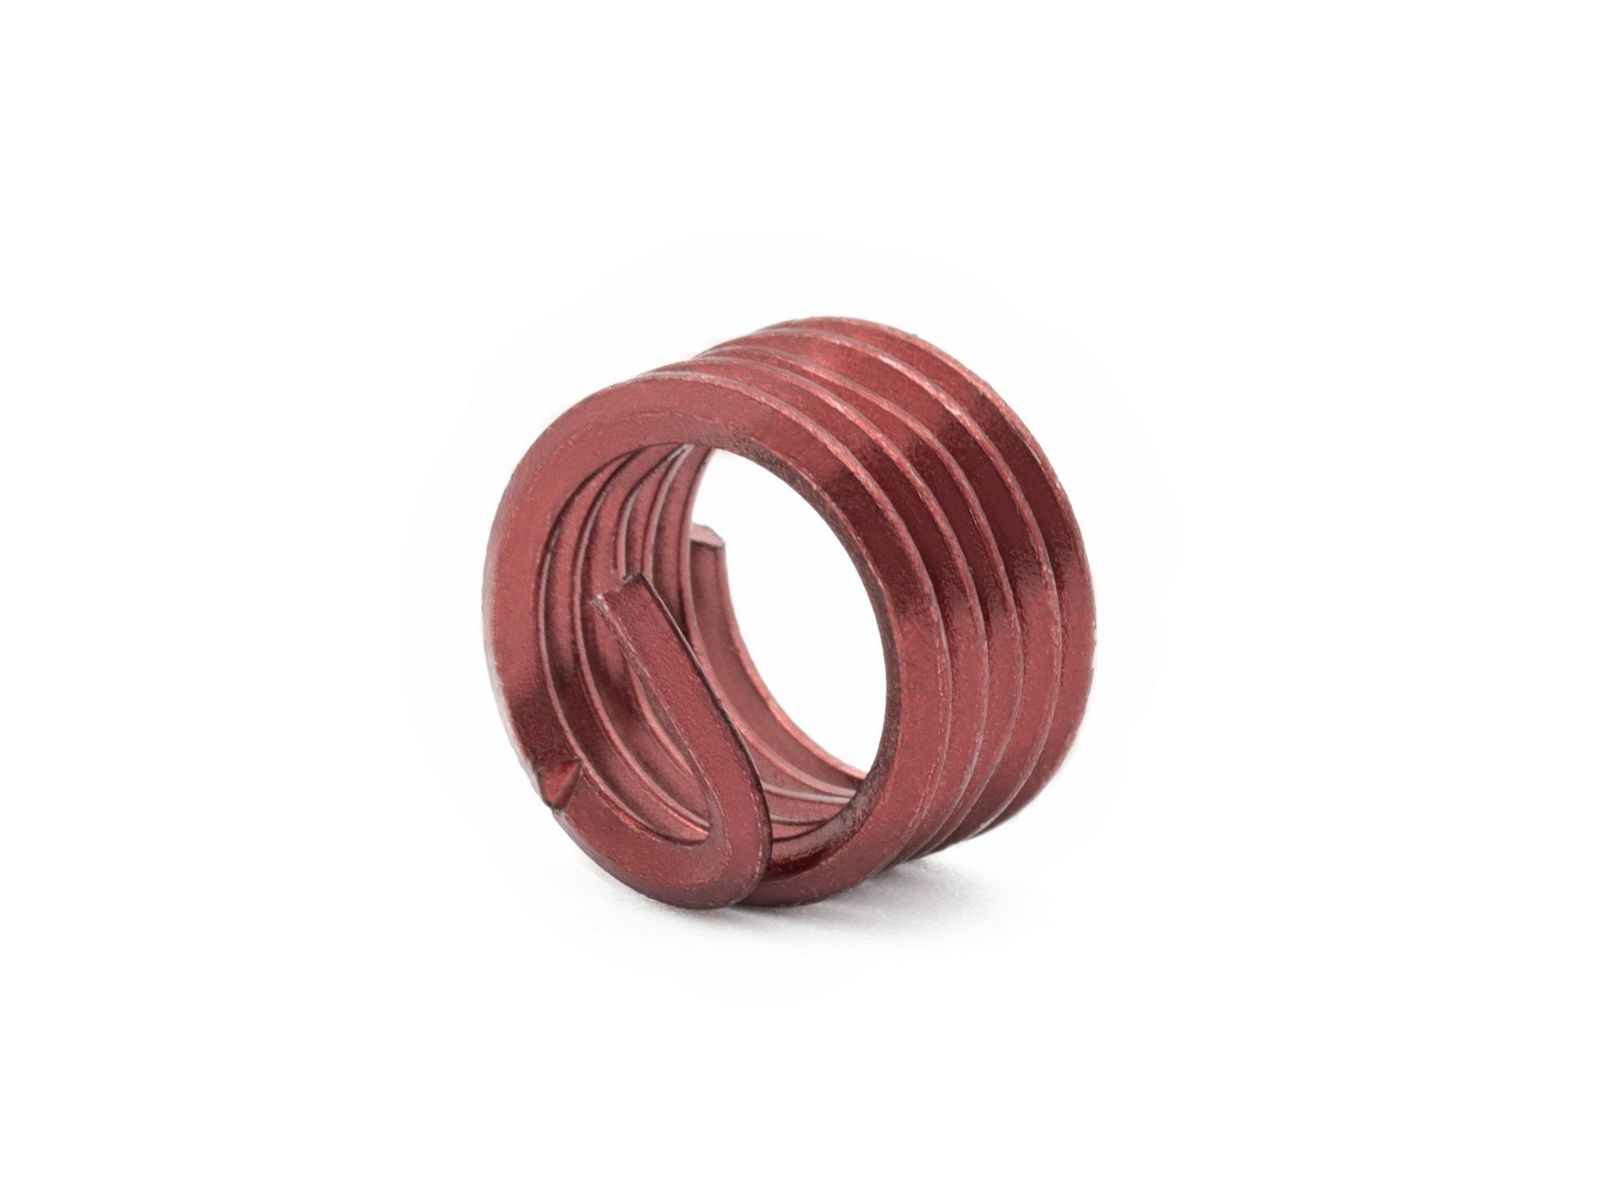 BaerCoil Wire Thread Inserts UNF 7/16 x 20 - 1.0 D (11.11 mm) - screw grip (screw locking) - 100 pcs.